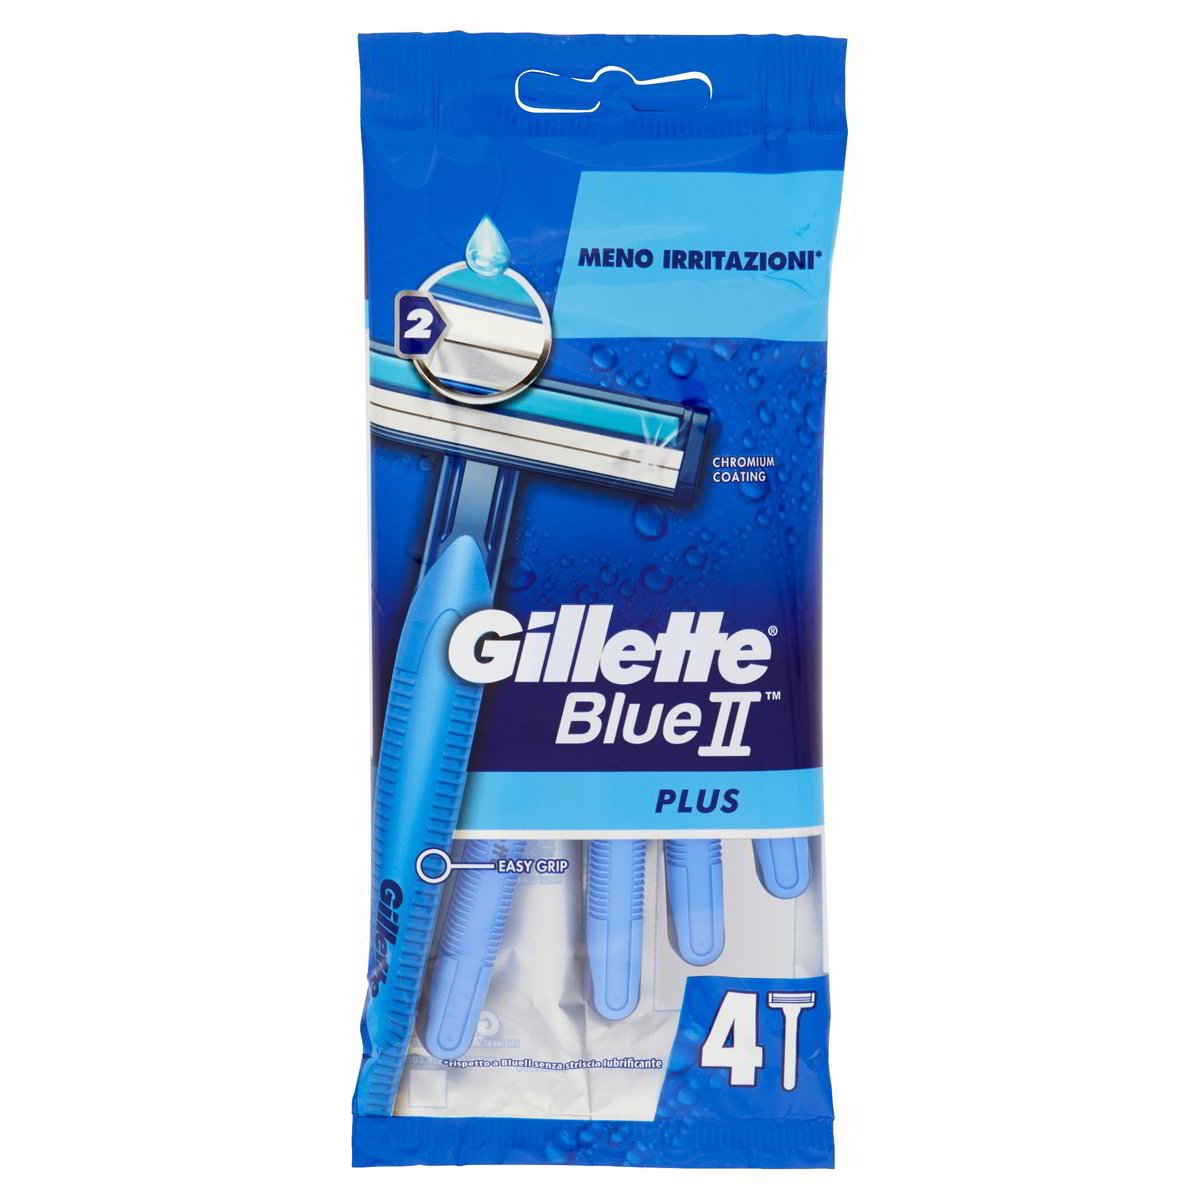 Gillette Rasoio Blue II Plus